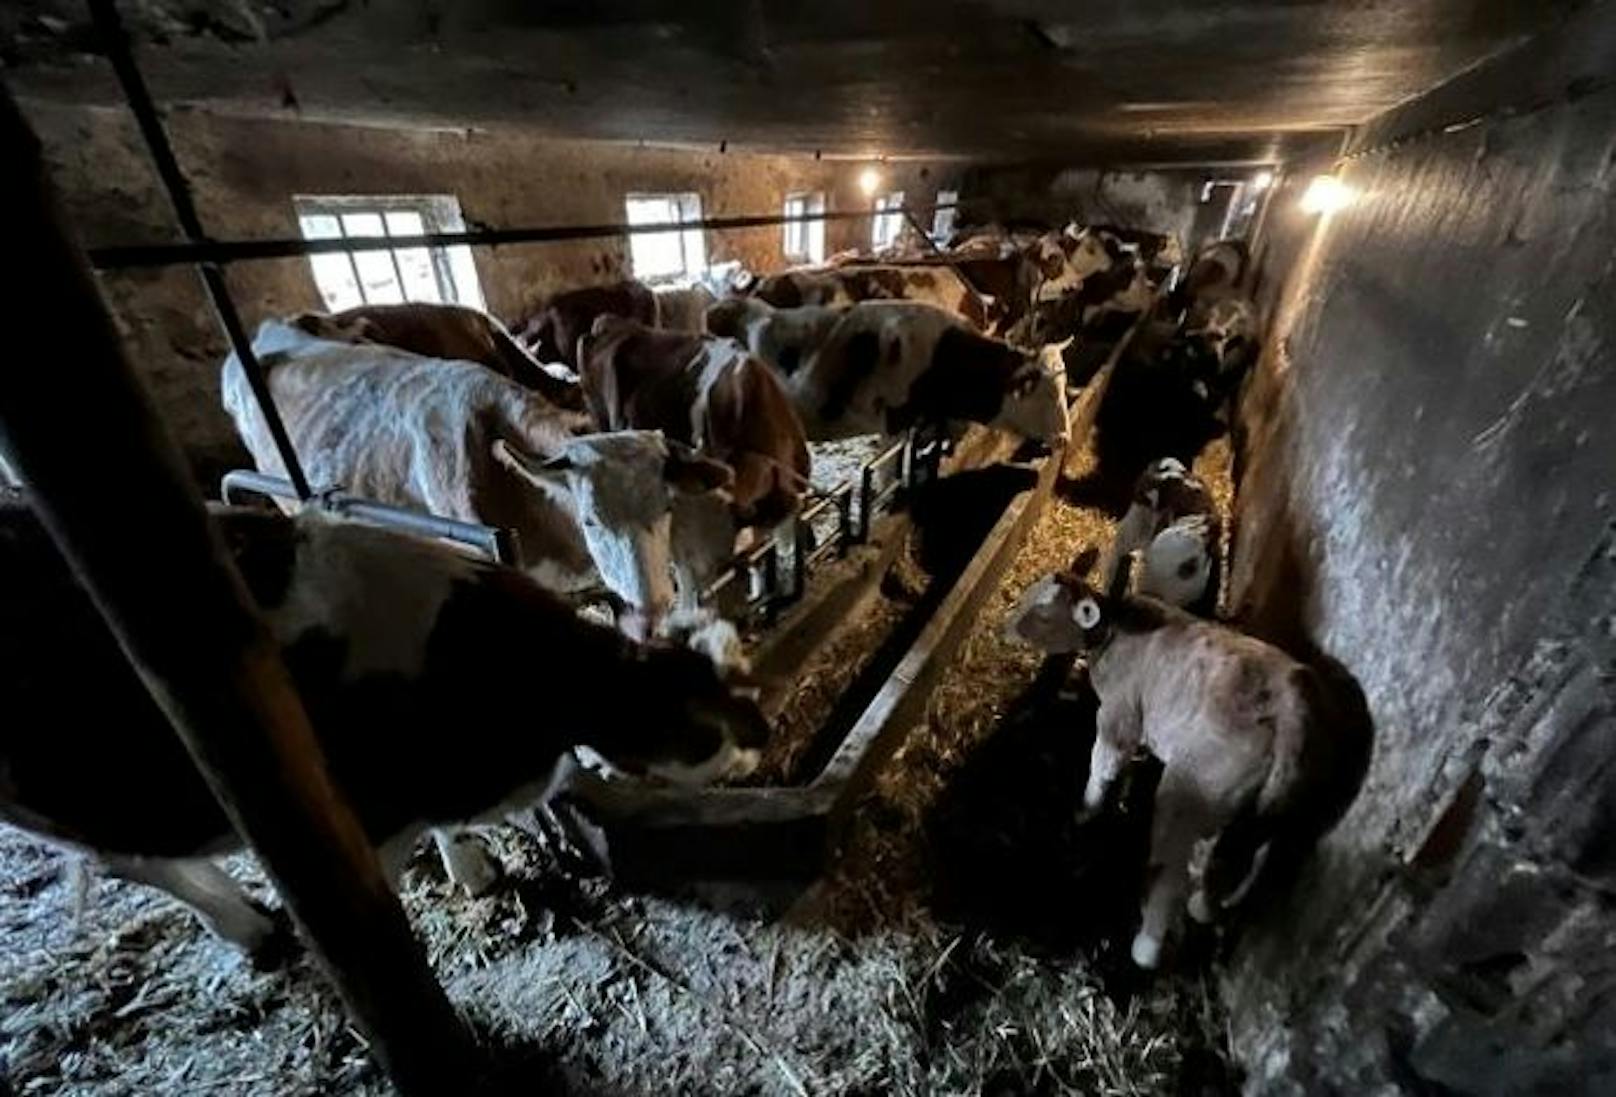 Kälber, Kühe am Zwischengang in Ketten, übervoller Stall: Tierschützer schlagen Alarm